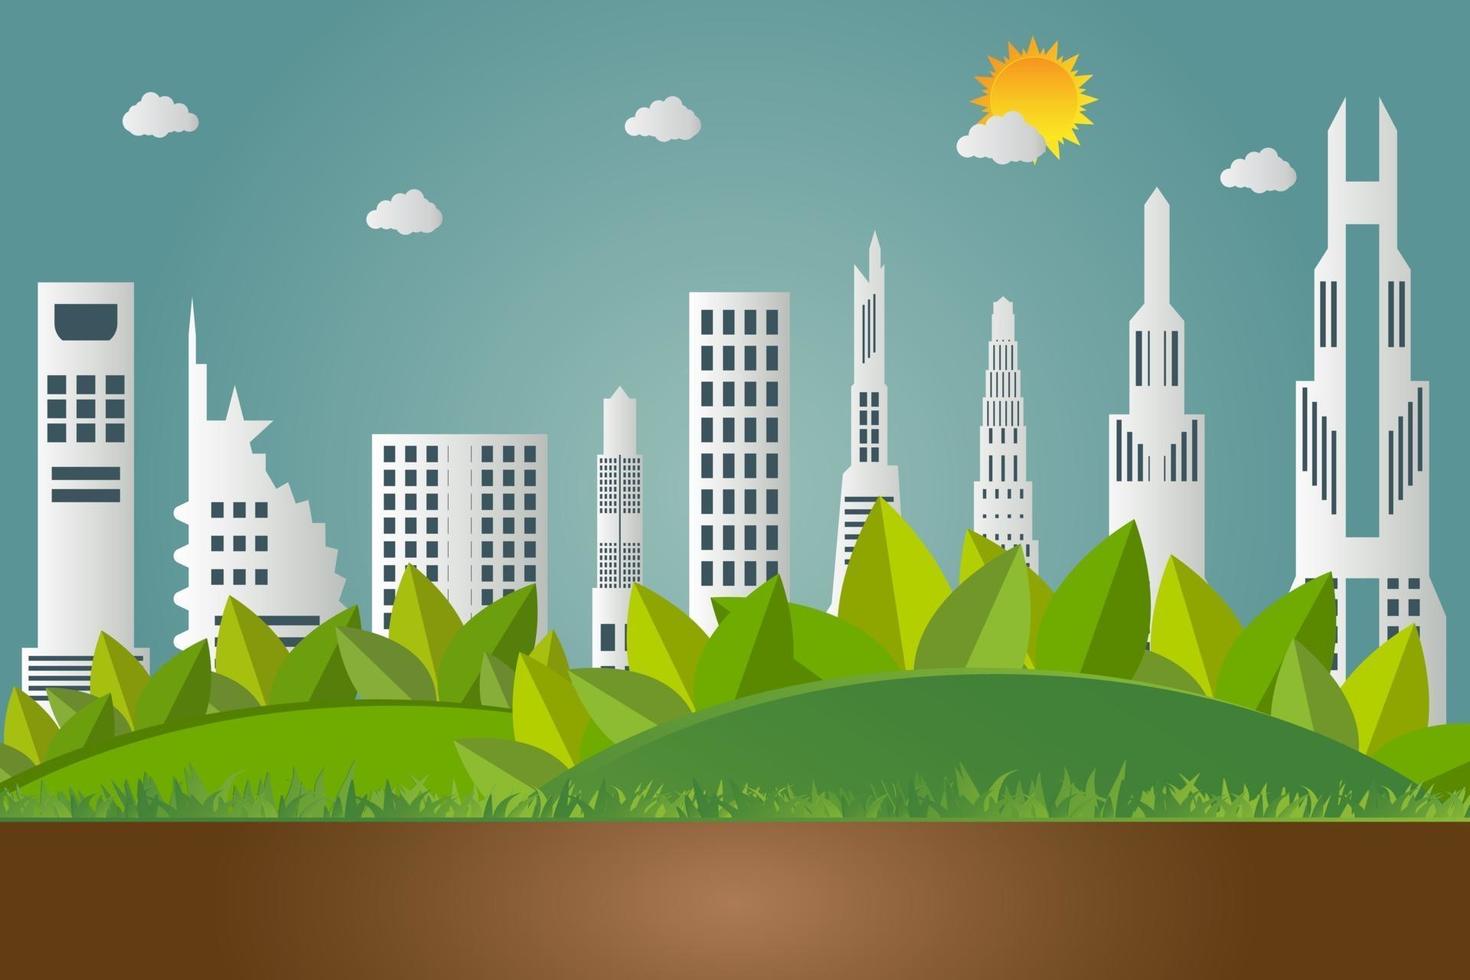 concetto di terra verde con foglie le città ecologiche aiutano il mondo con idee concettuali eco-compatibili vettore